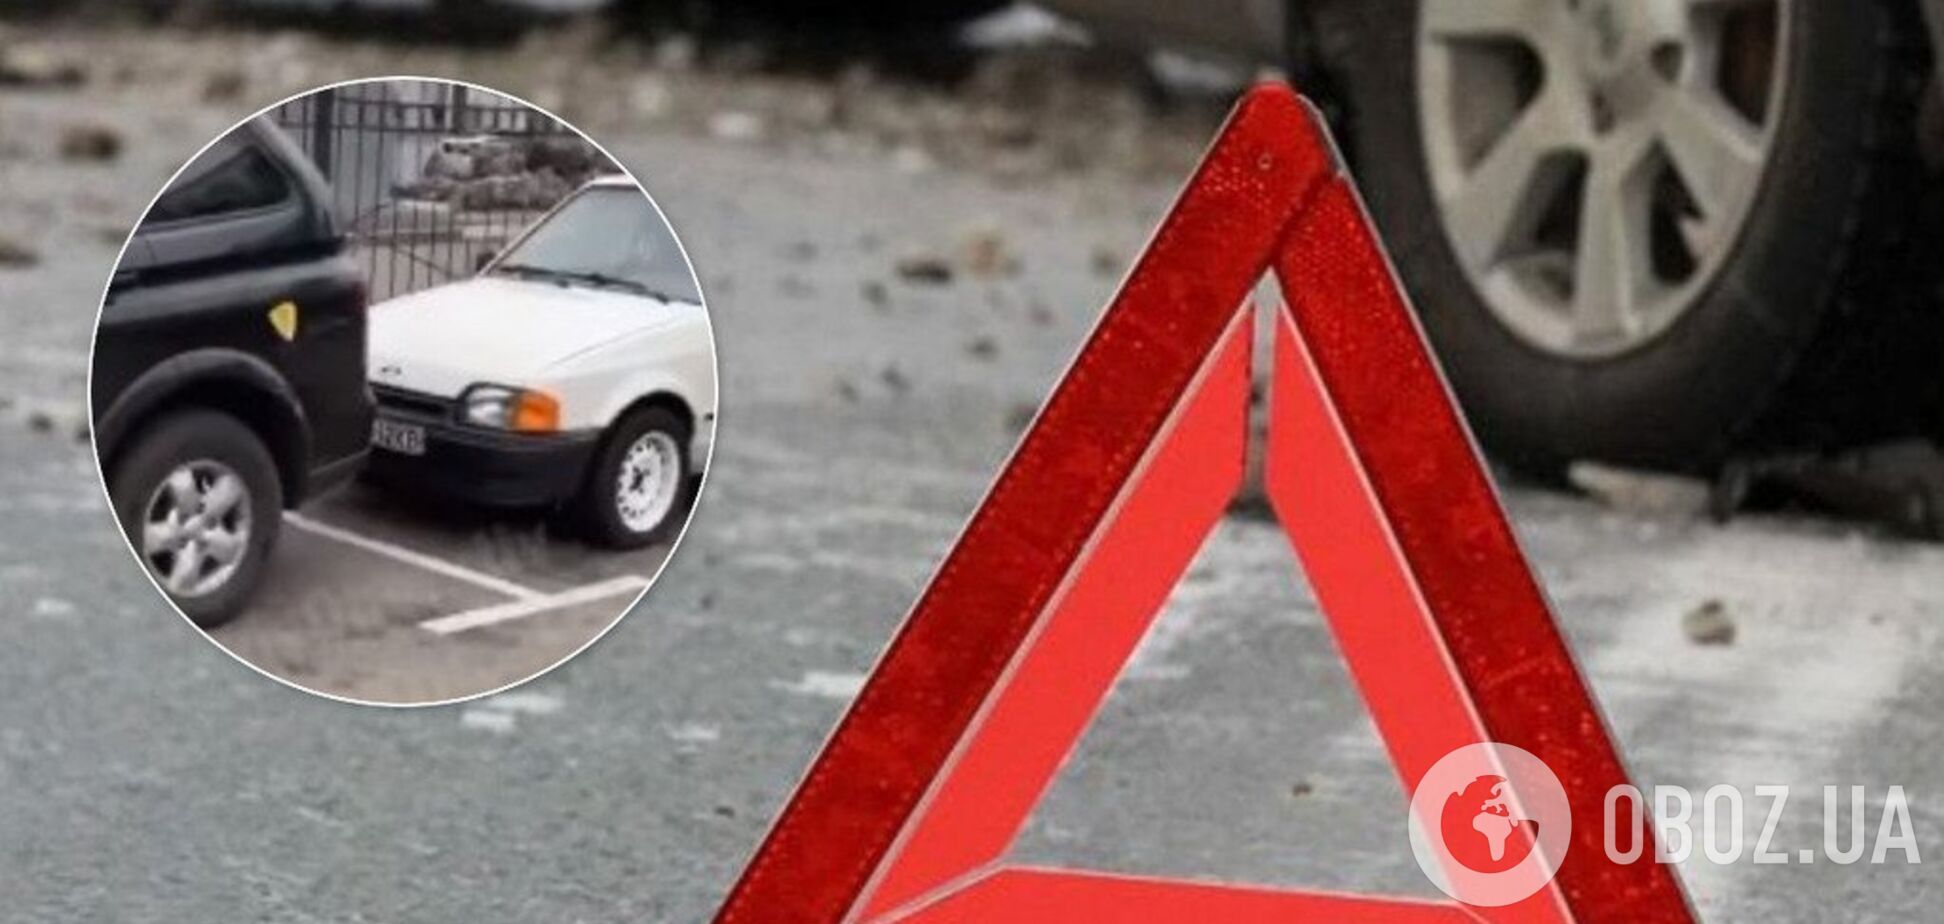 В Киеве девушка на Porsche перепутала педали и разбила шесть авто: видео ДТП